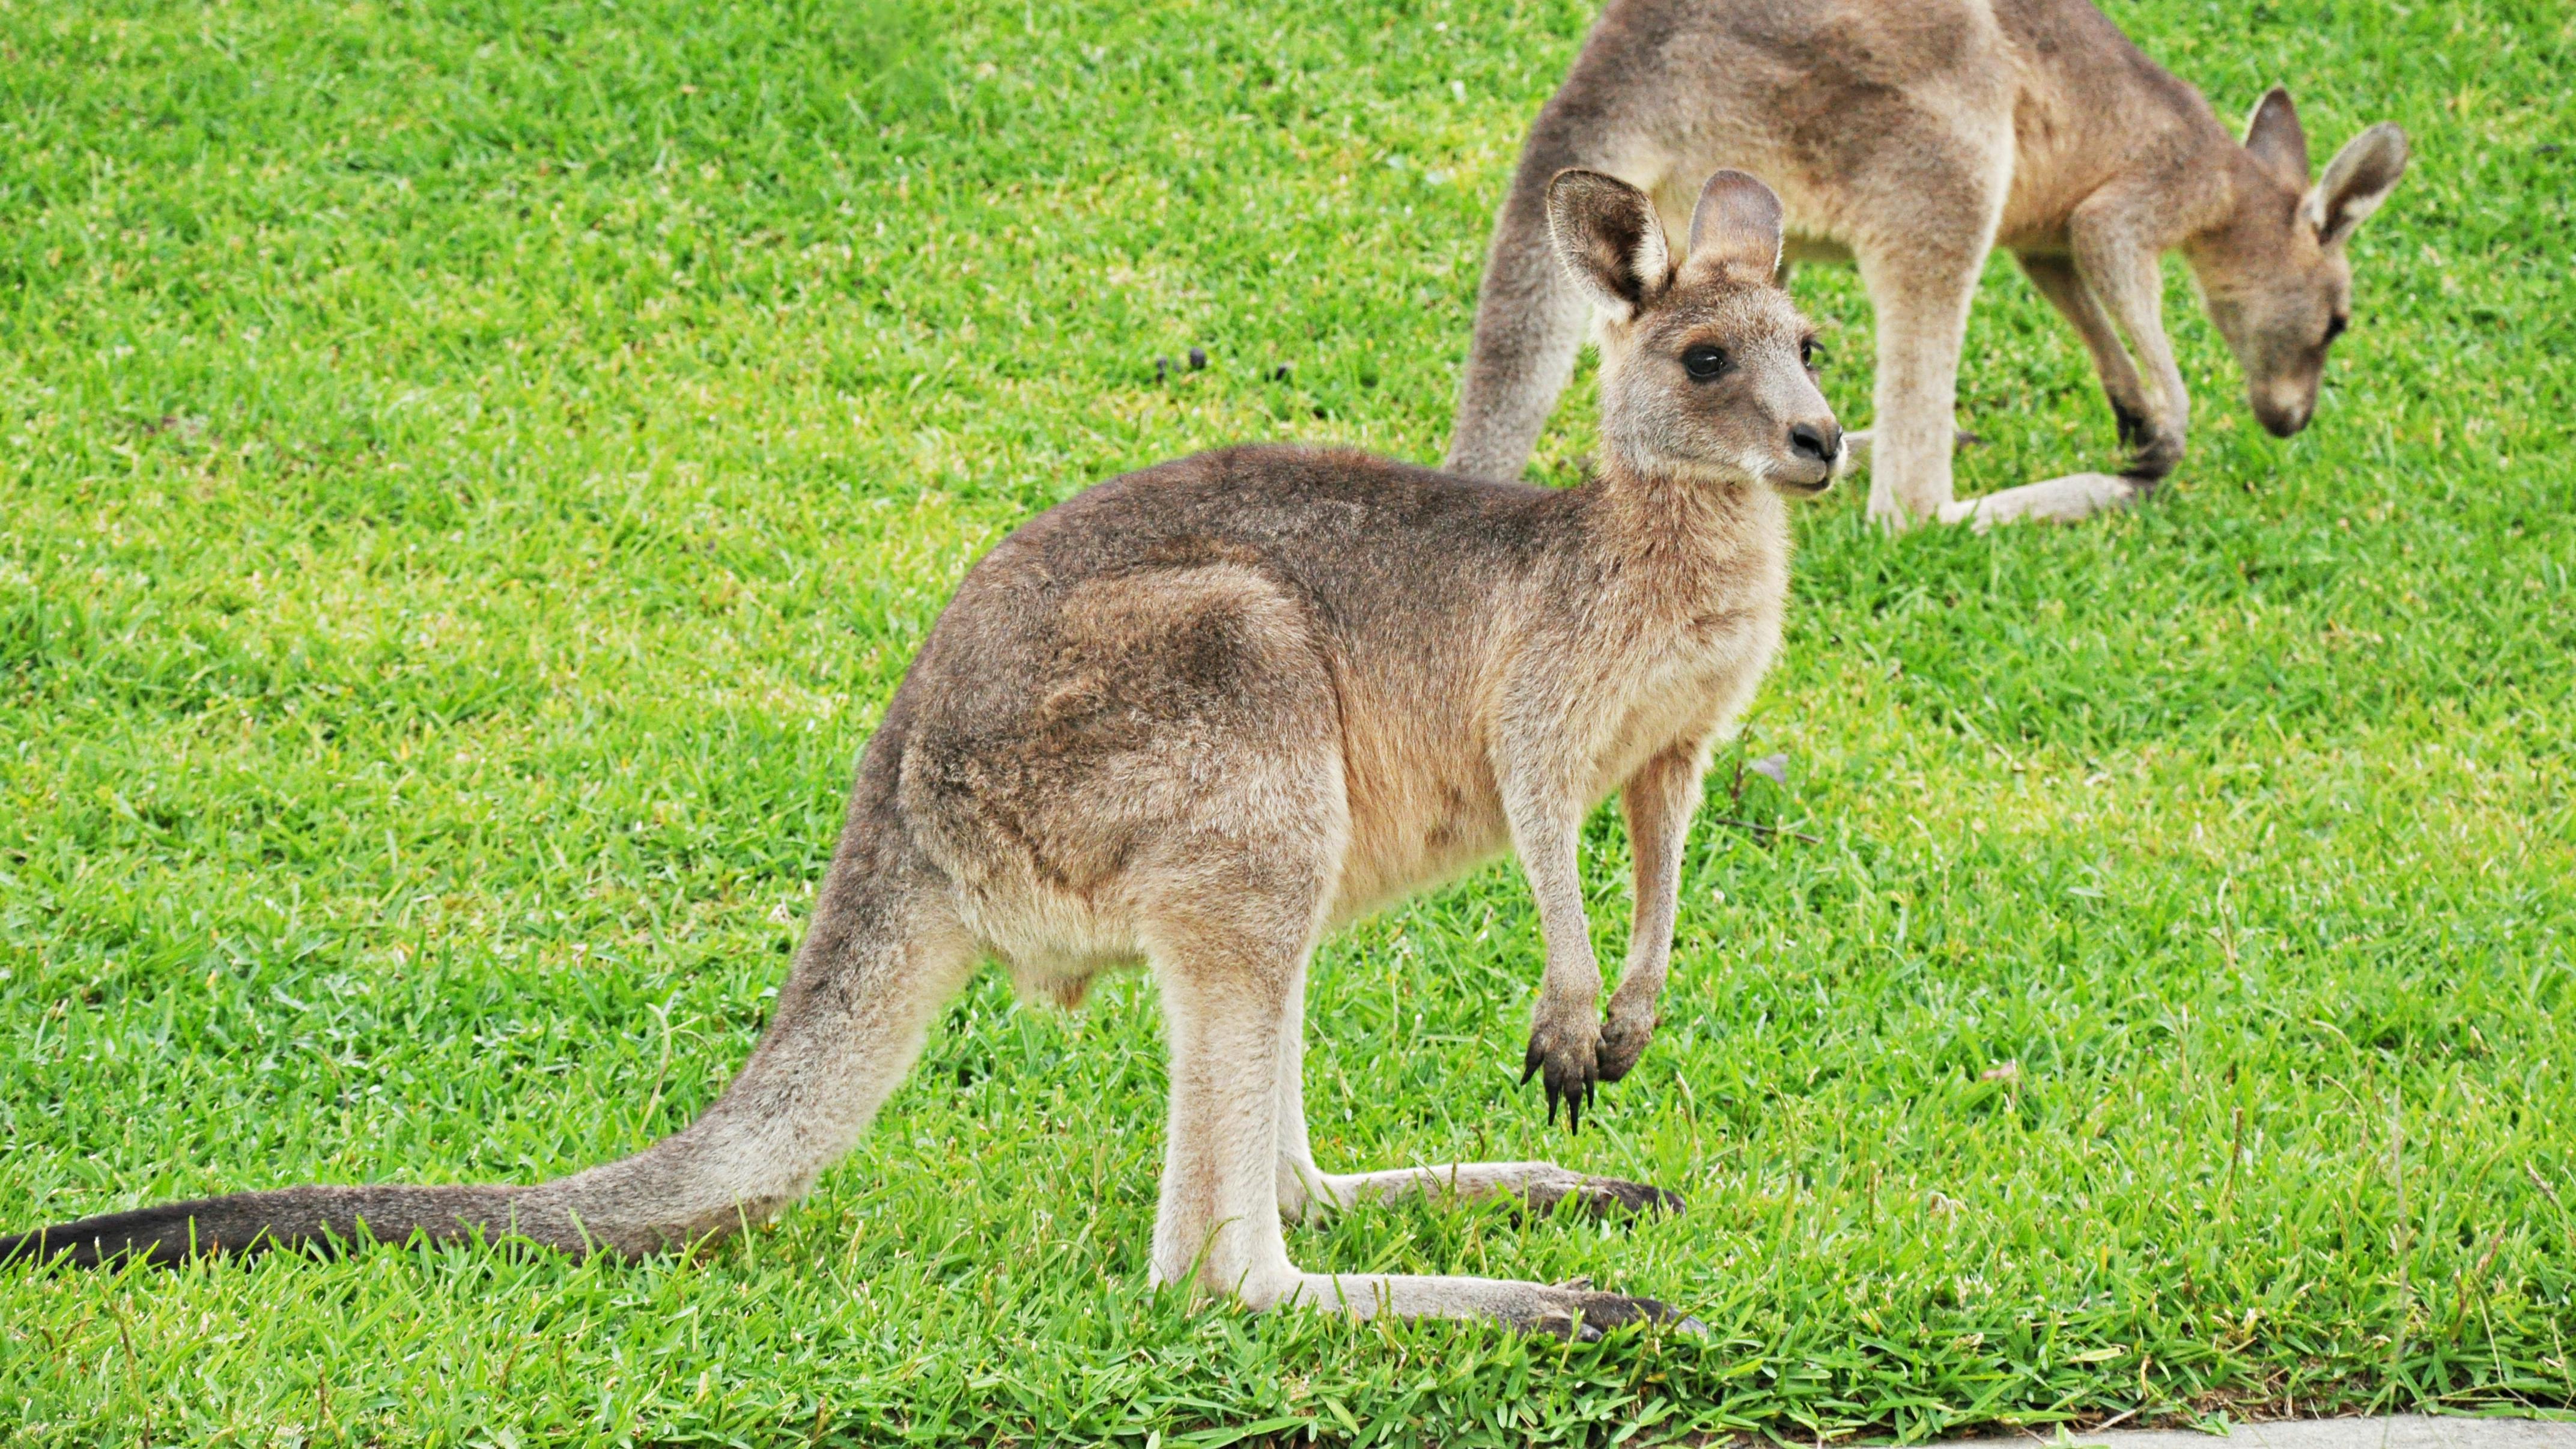 Two Kangaroos on green grass